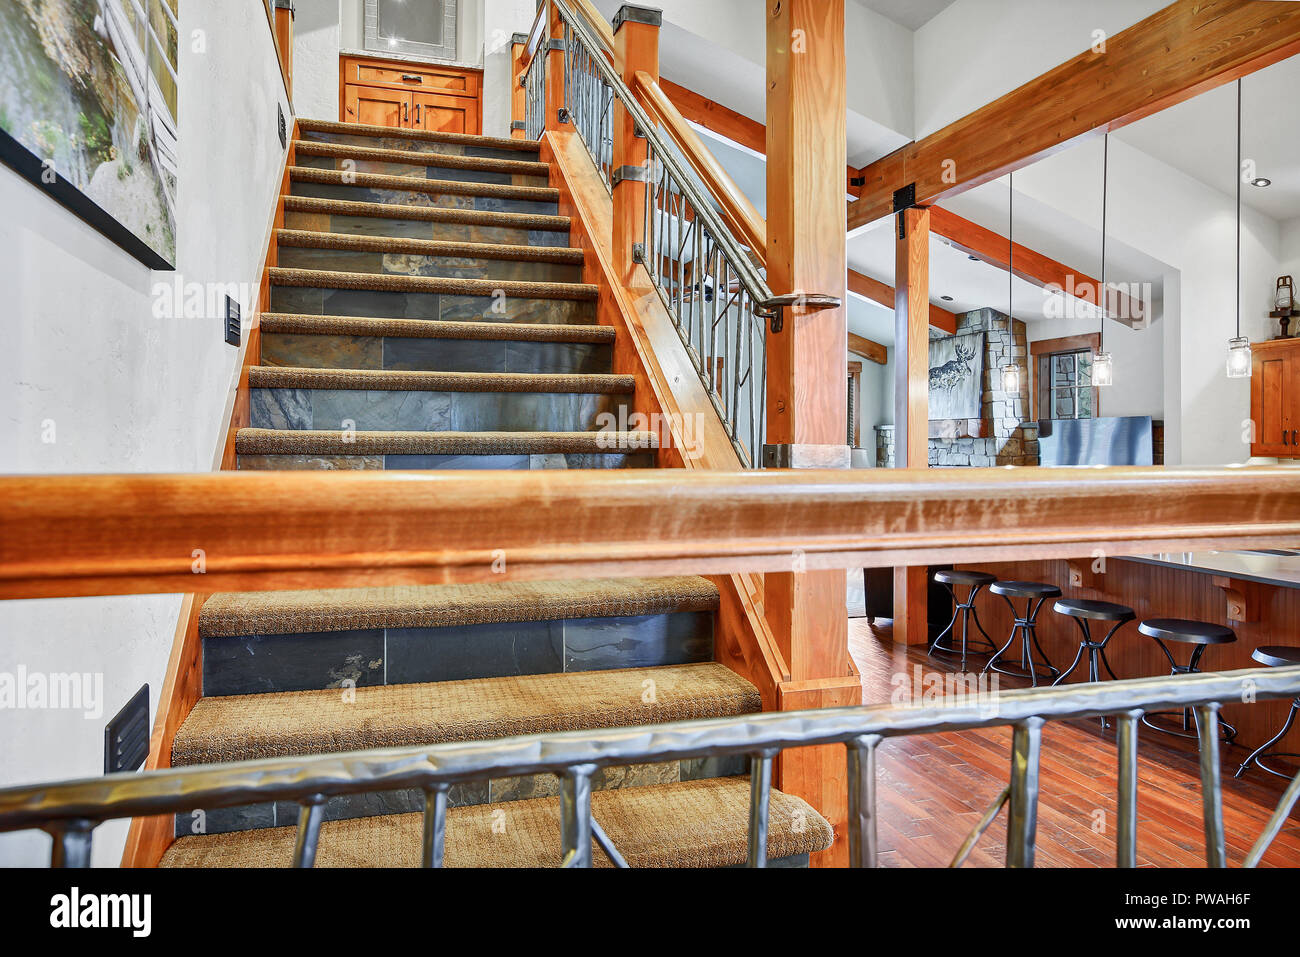 Plan Startseite Interieur mit traditionellen foyer Treppe mit Steinfliesen dekoriert Öffnen, Stockfoto